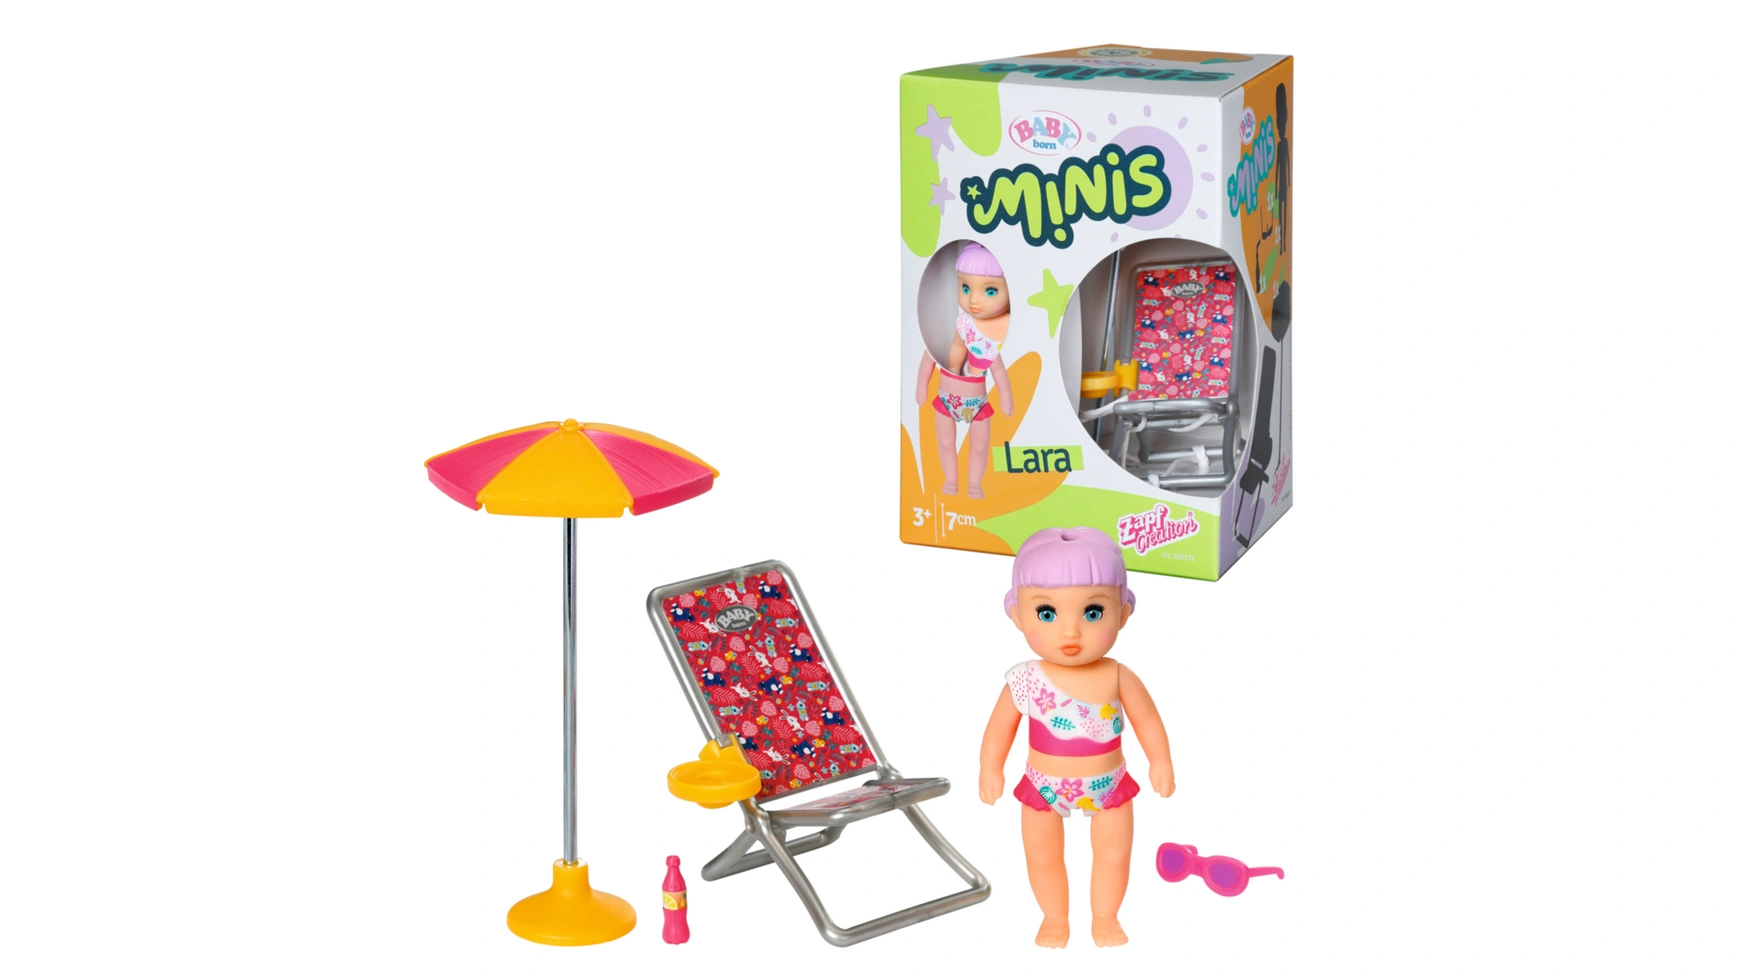 Baby Born Minis игровой набор Summertime, кукла Лара высотой 7 см с шезлонгом, зонтиком и бутылкой цена и фото